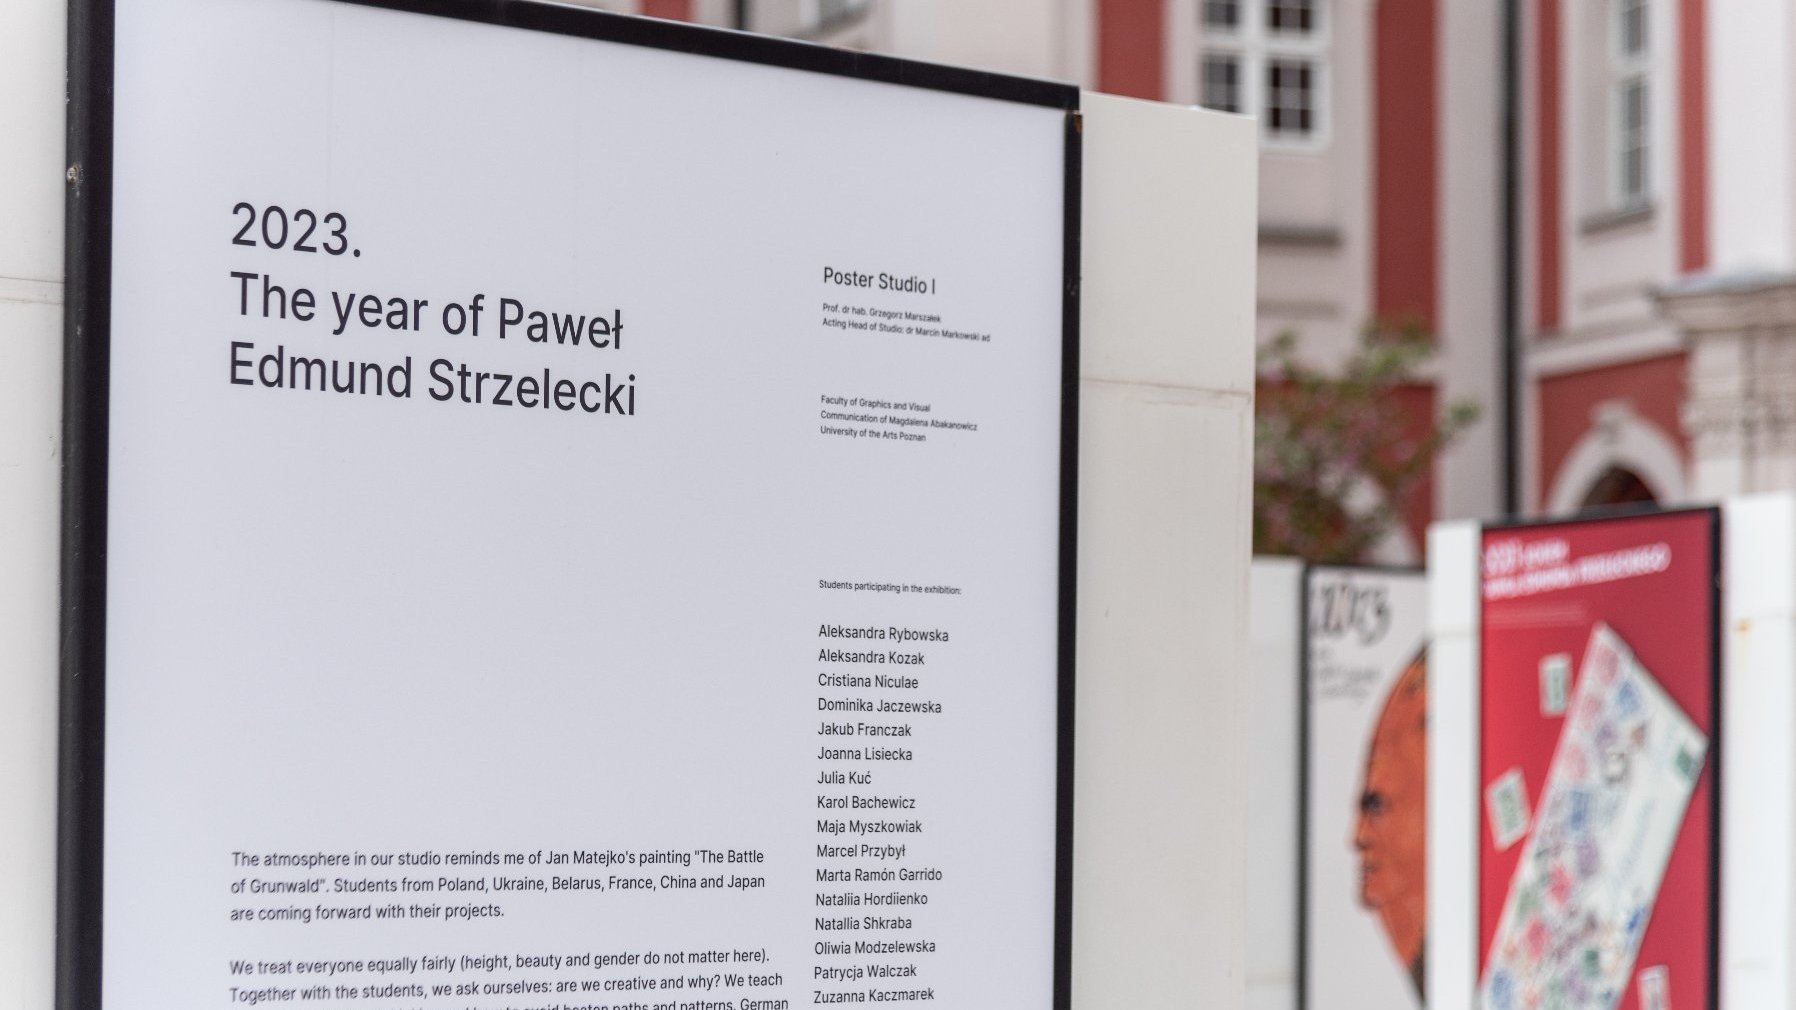 Galeria zdjęć przedstawia wystawę plakatów poświęconych Pawłowi Edmundowi Strzeleckiemu.